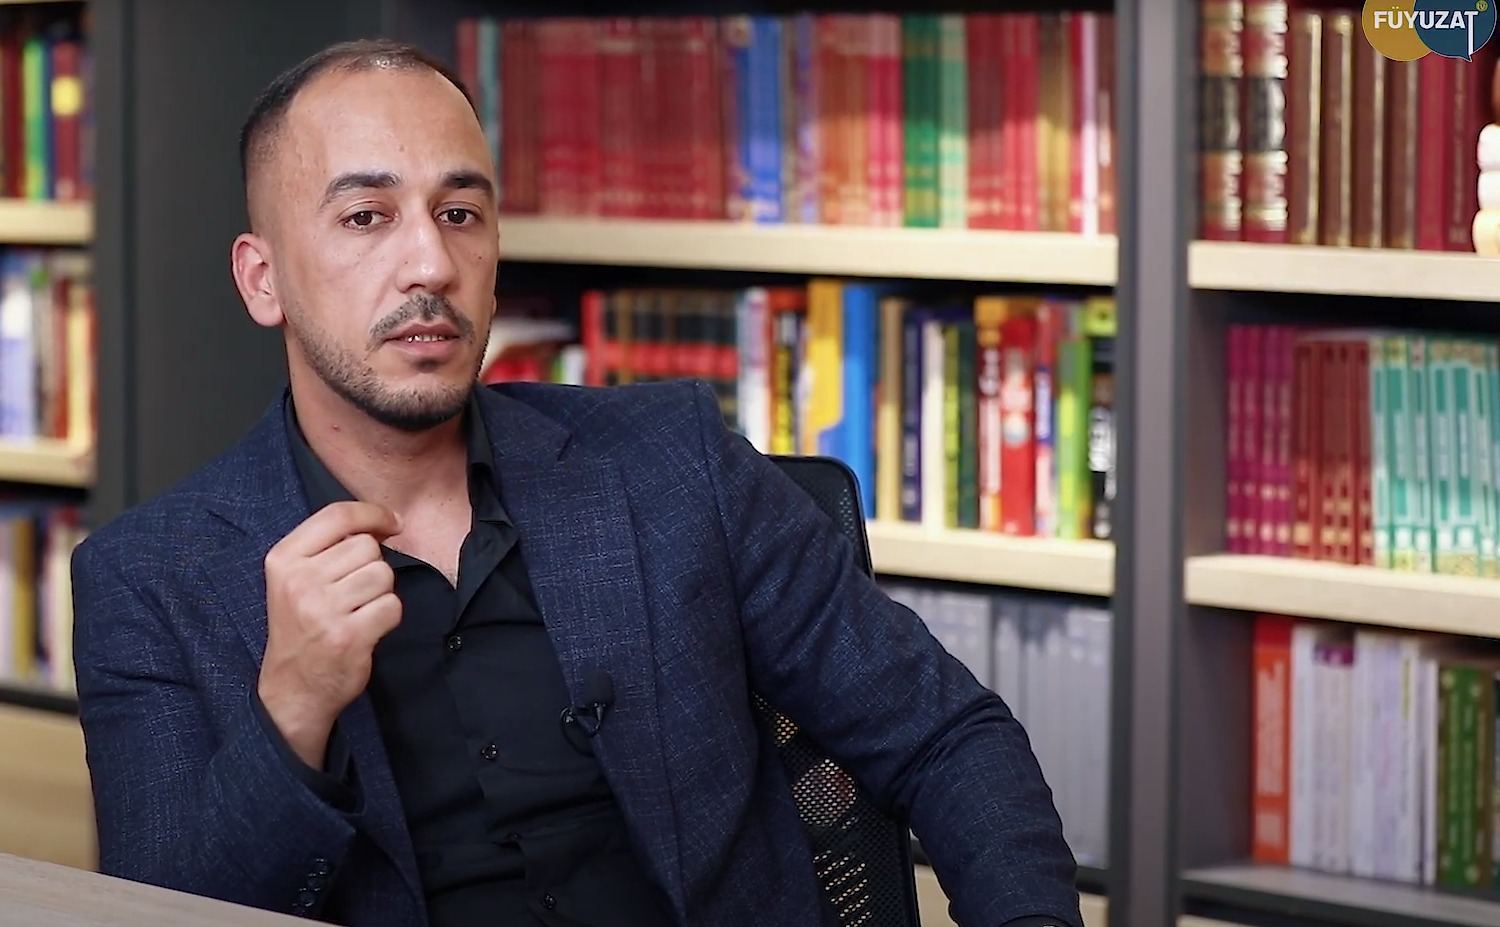 Во время и после II Карабахской войны азербайджанские СМИ прошли большой этап развития - Асиф Мехман (Видеоинтервью)